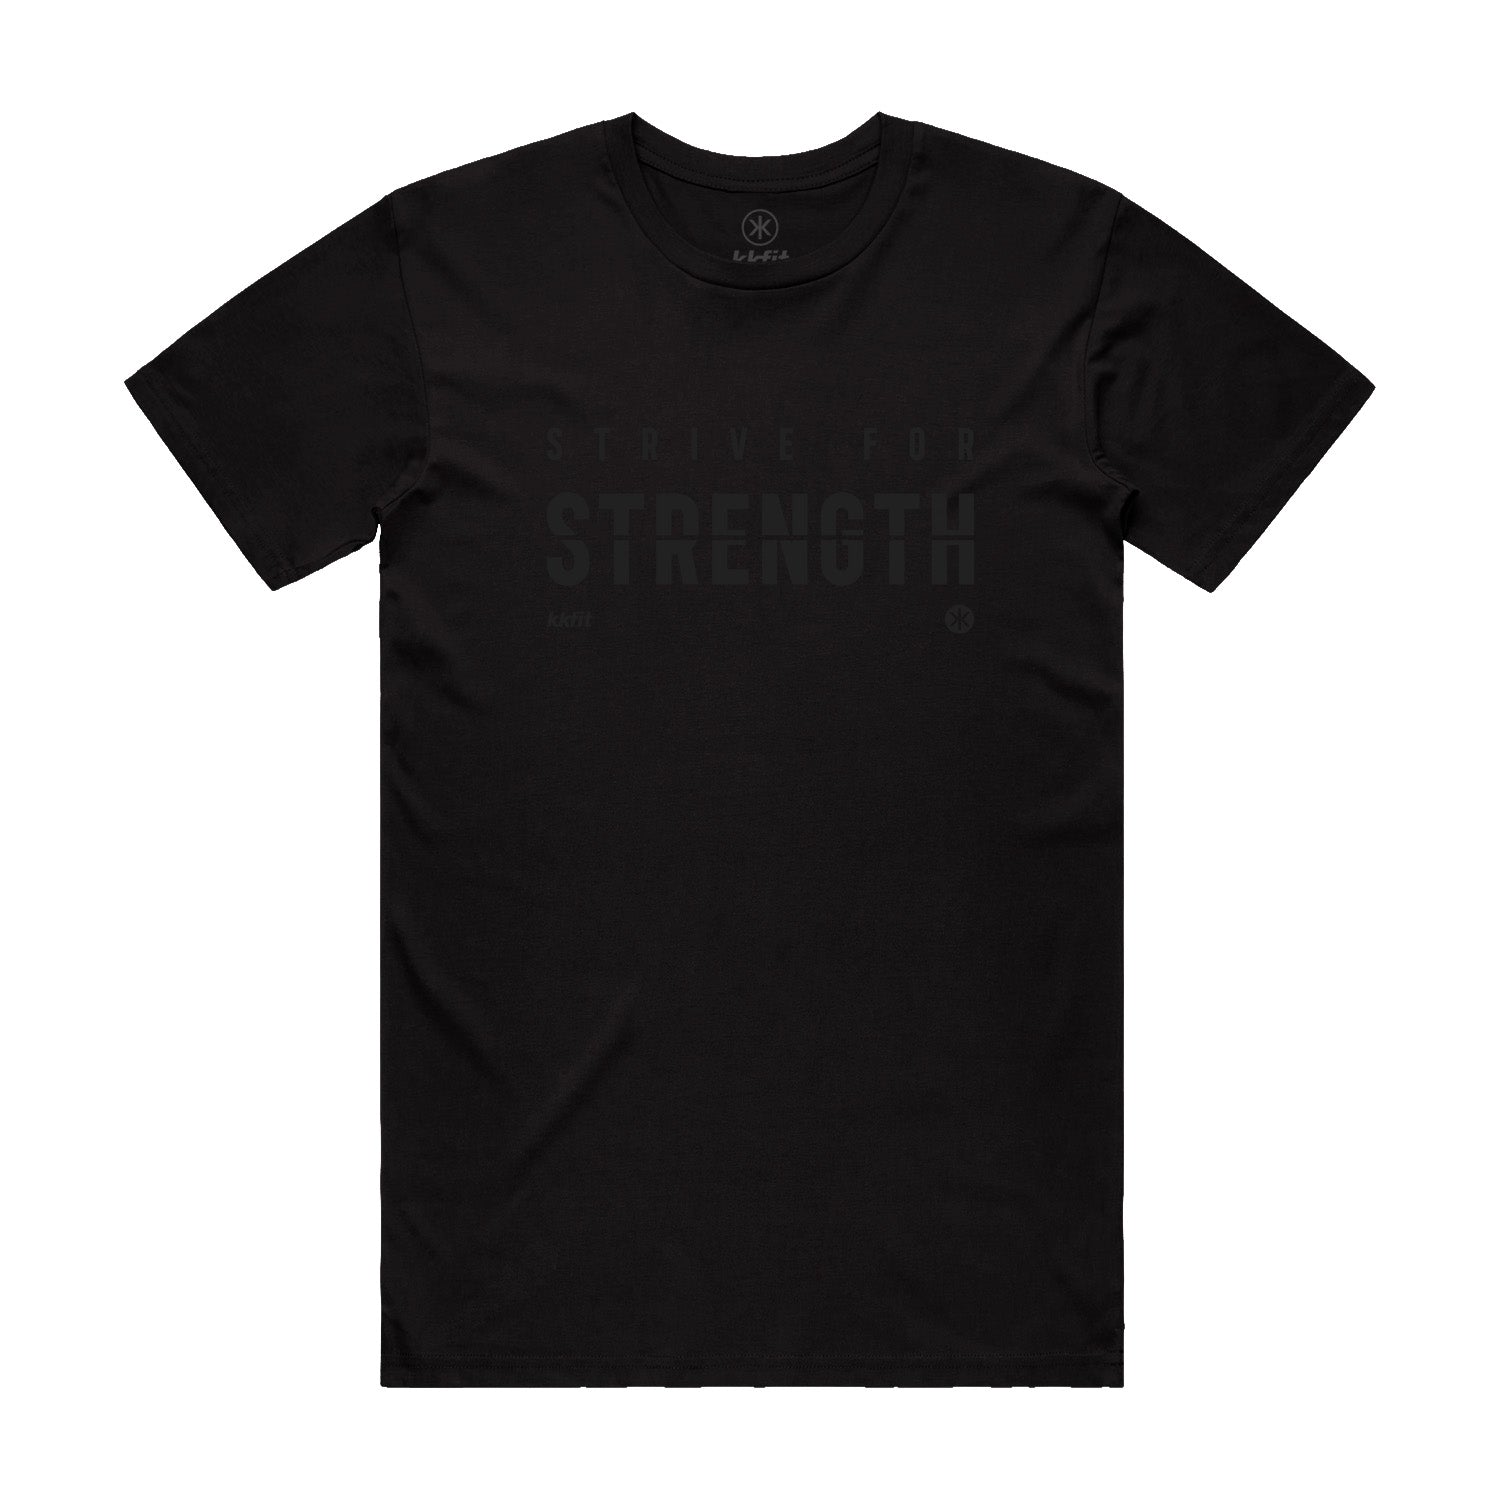 Tshirt - Black Strive for Strength